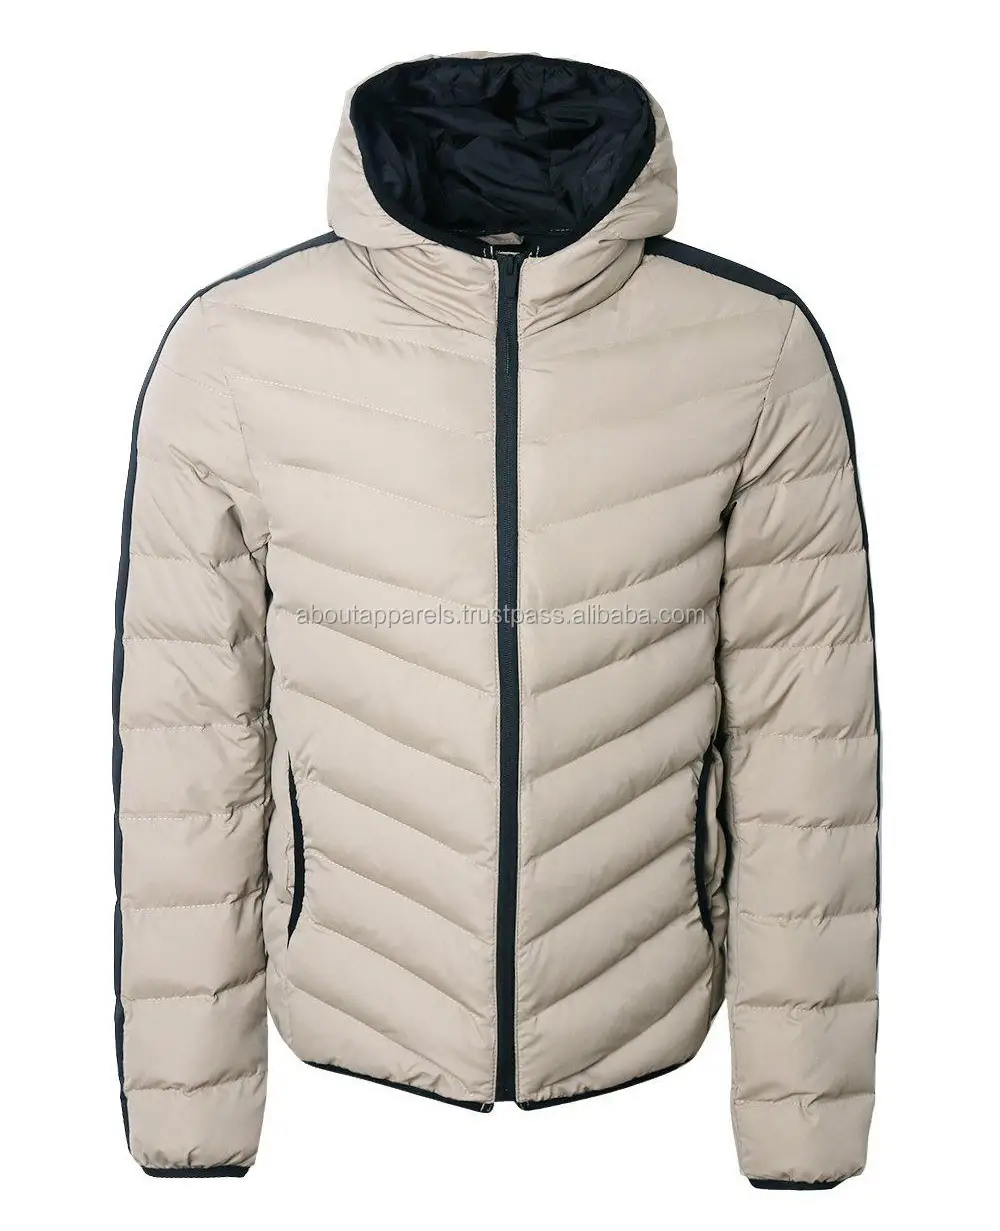 Nuove giacche imbottite trapuntate e imbottite invernali da uomo personalizzate a buon mercato su misura